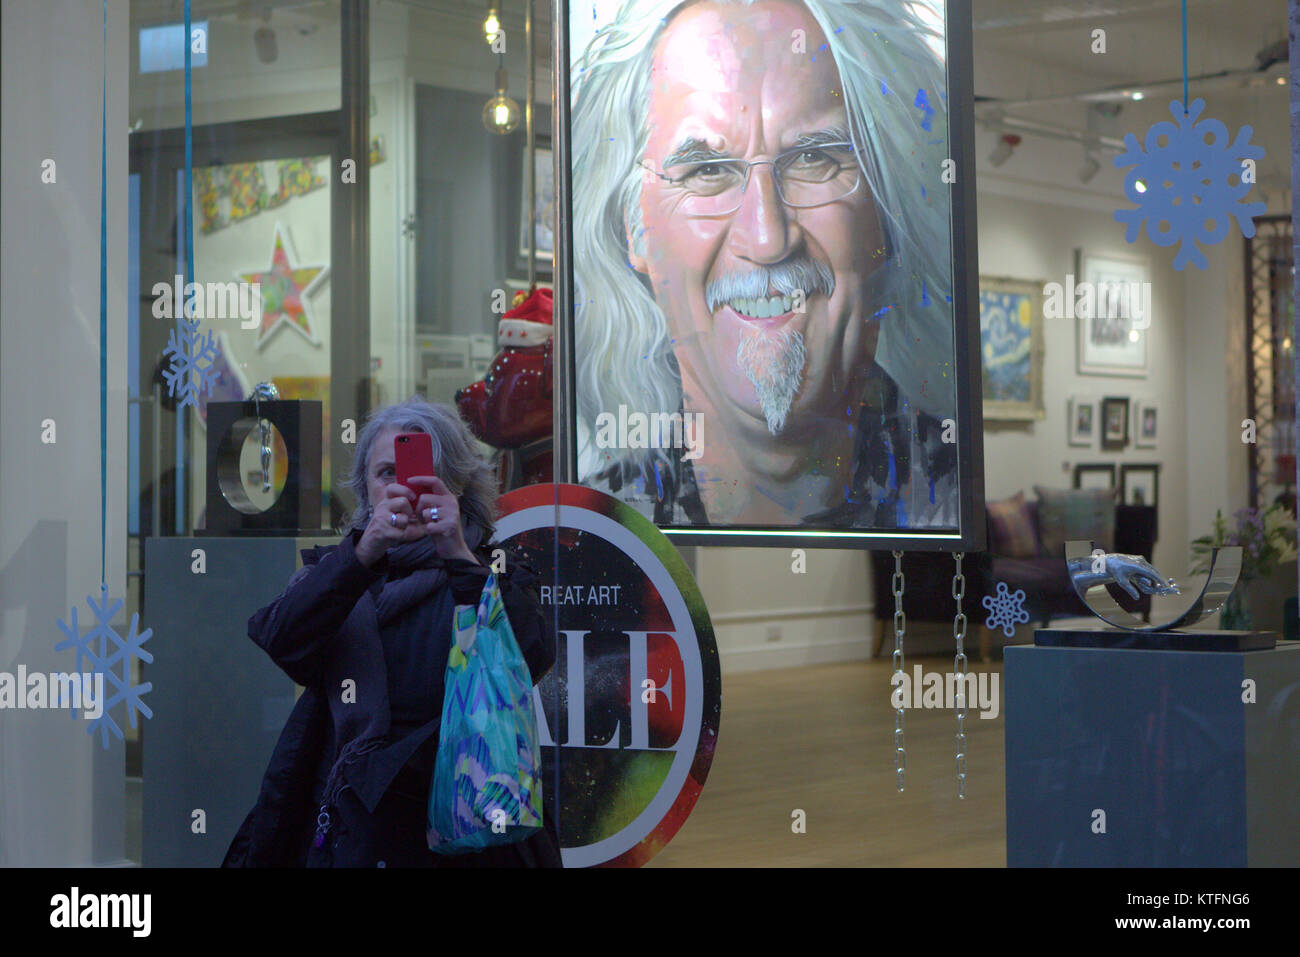 Heiligabend und ein Ventilator reißt einen selfie mit Billy Connolly Kunstdruck in Schloss Kunst der Queen Street in der Nähe der Stadt George Square. Kredit Gerard Fähre / alamy Nachrichten Stockfoto